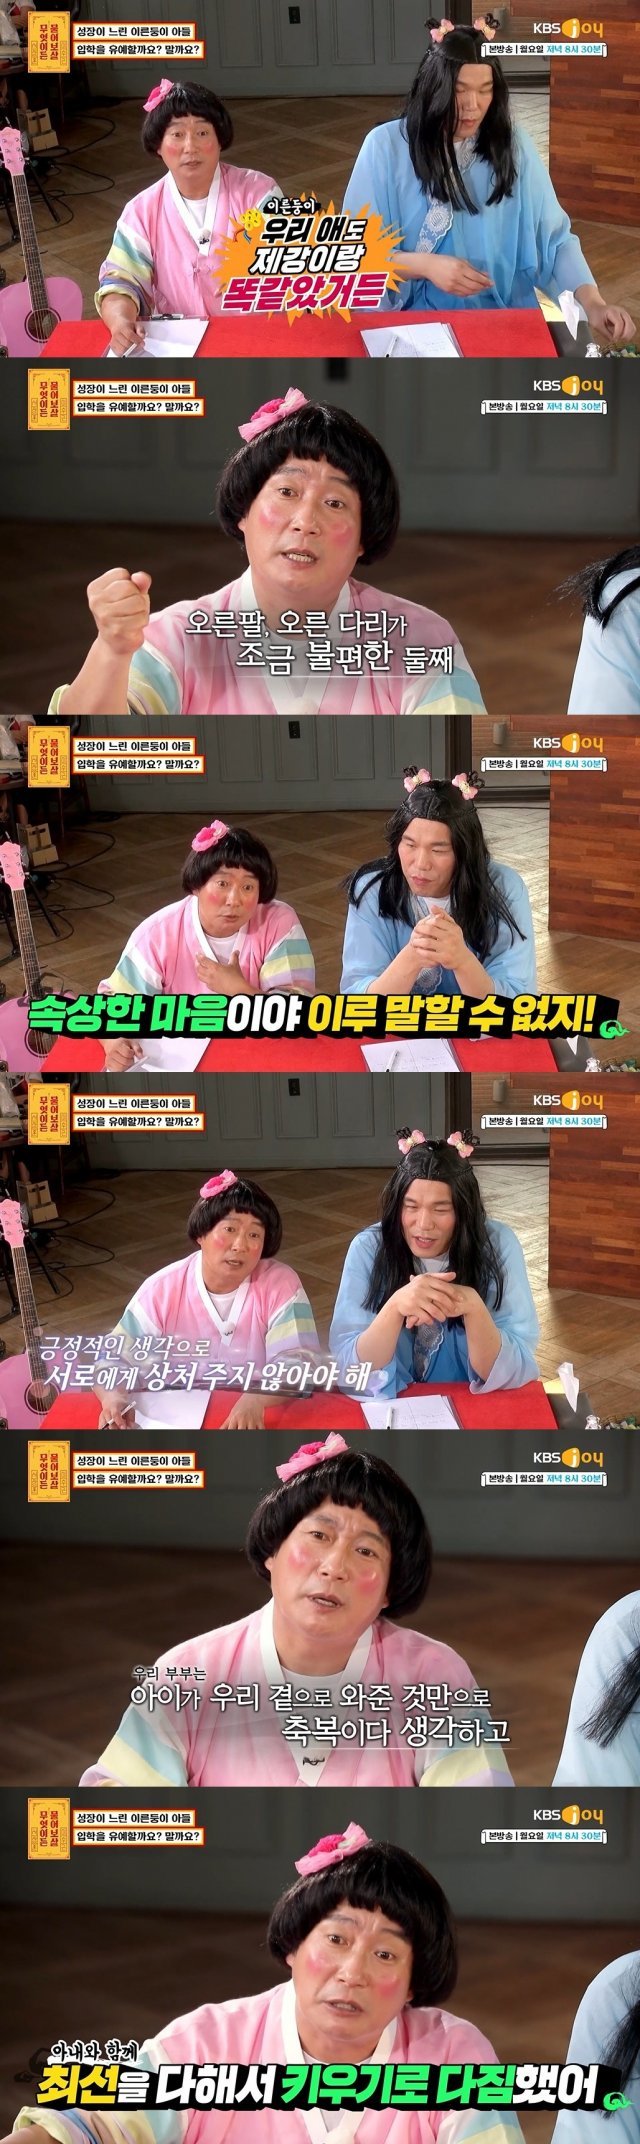 KBS Joy ‘무엇이든 물어보살’ 방송 화면 캡처 © 뉴스1